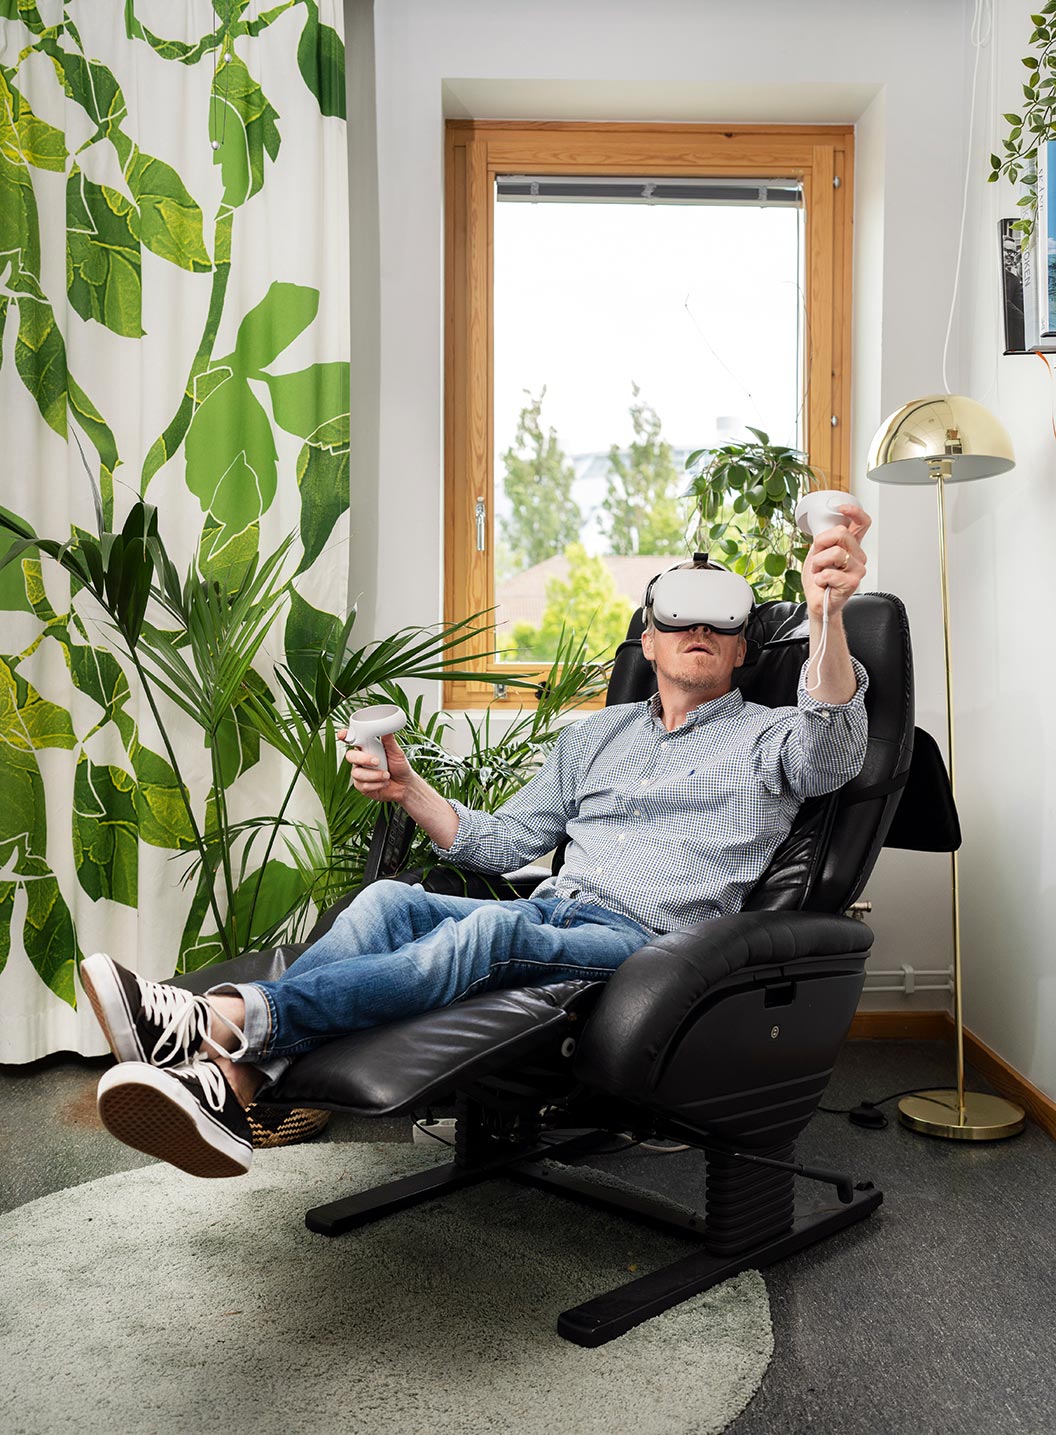 Calle Rosengren deltar i mötet i VR-hjälm. På mötet syns inte att han sitter i sin mysfåtölj.